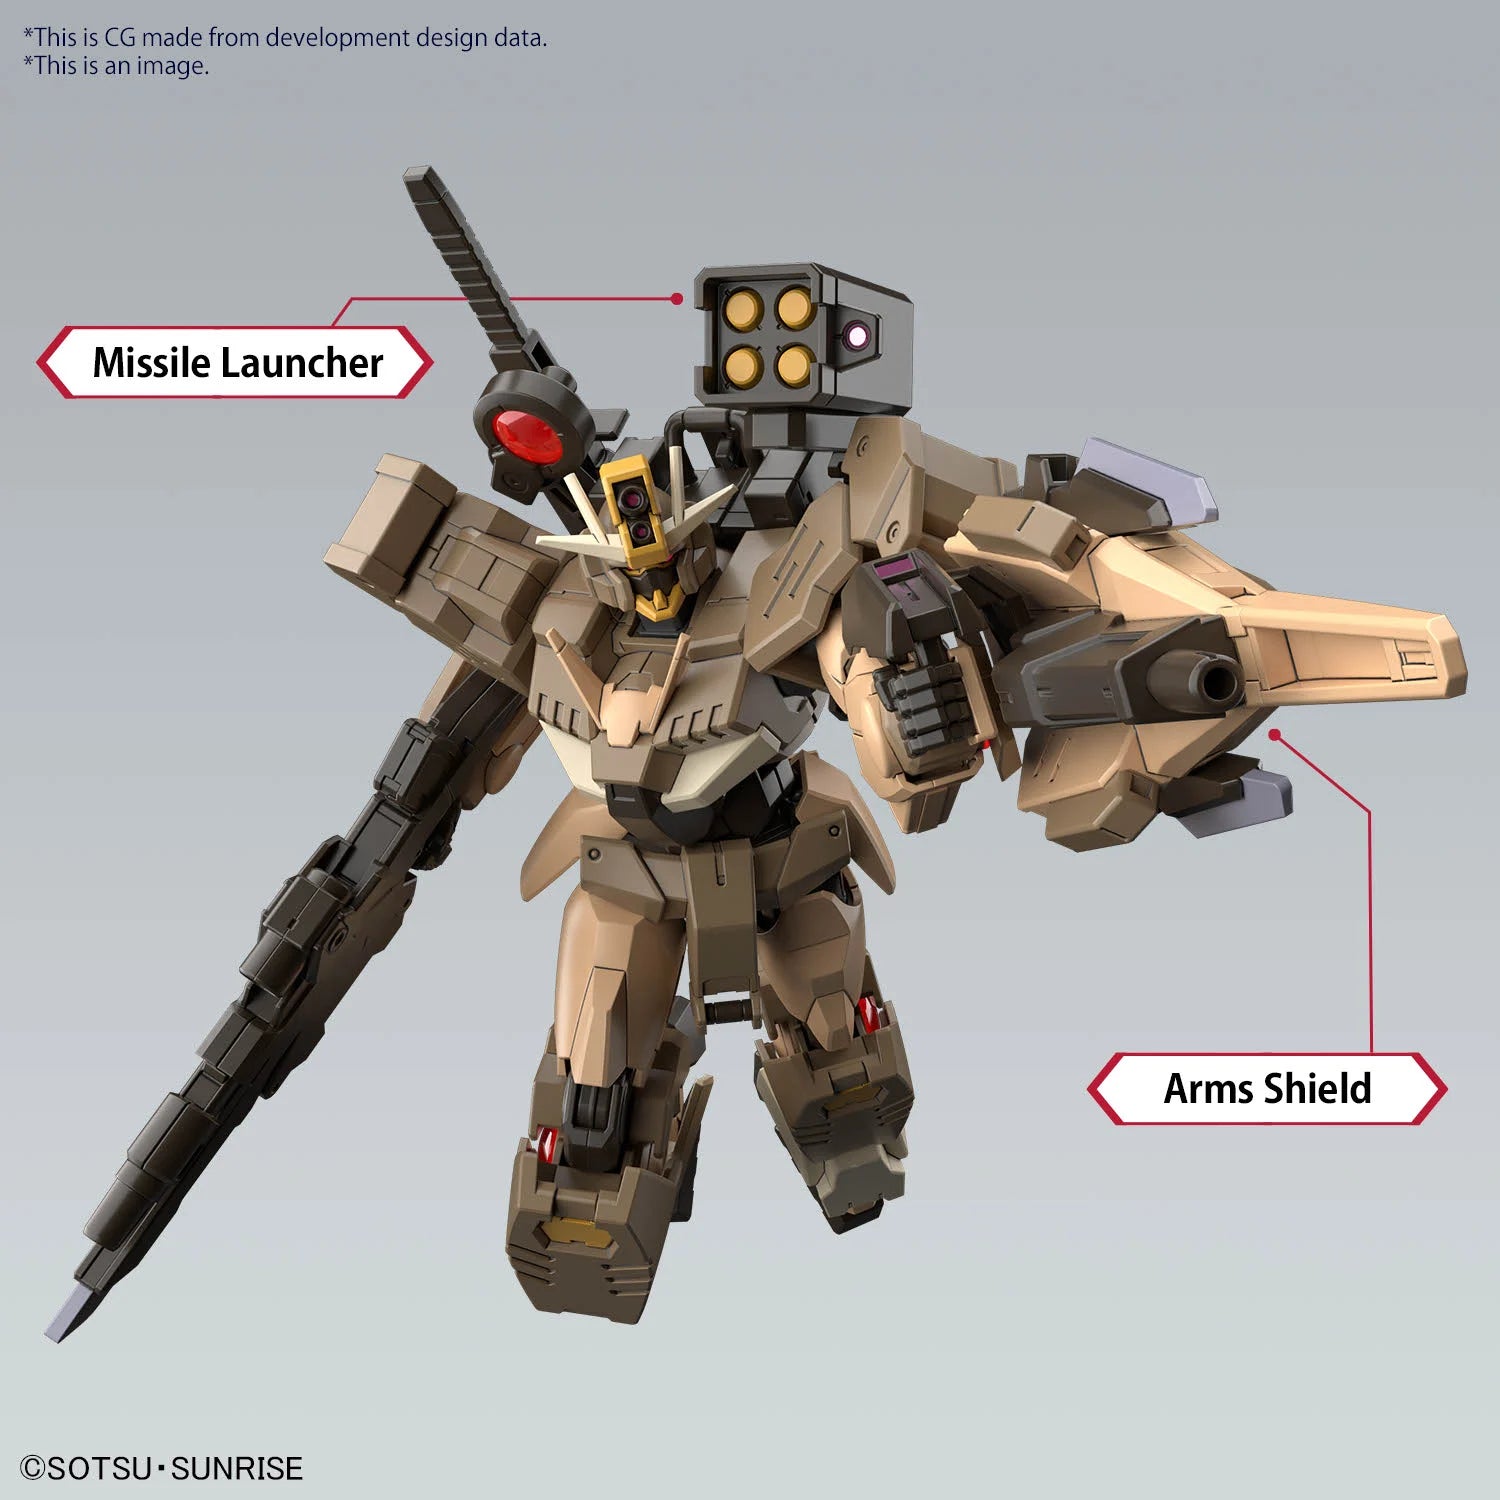 GUNDAM - HG 1/144 - Gundam 00 Command Quan(T) Desert Type - Model Kit